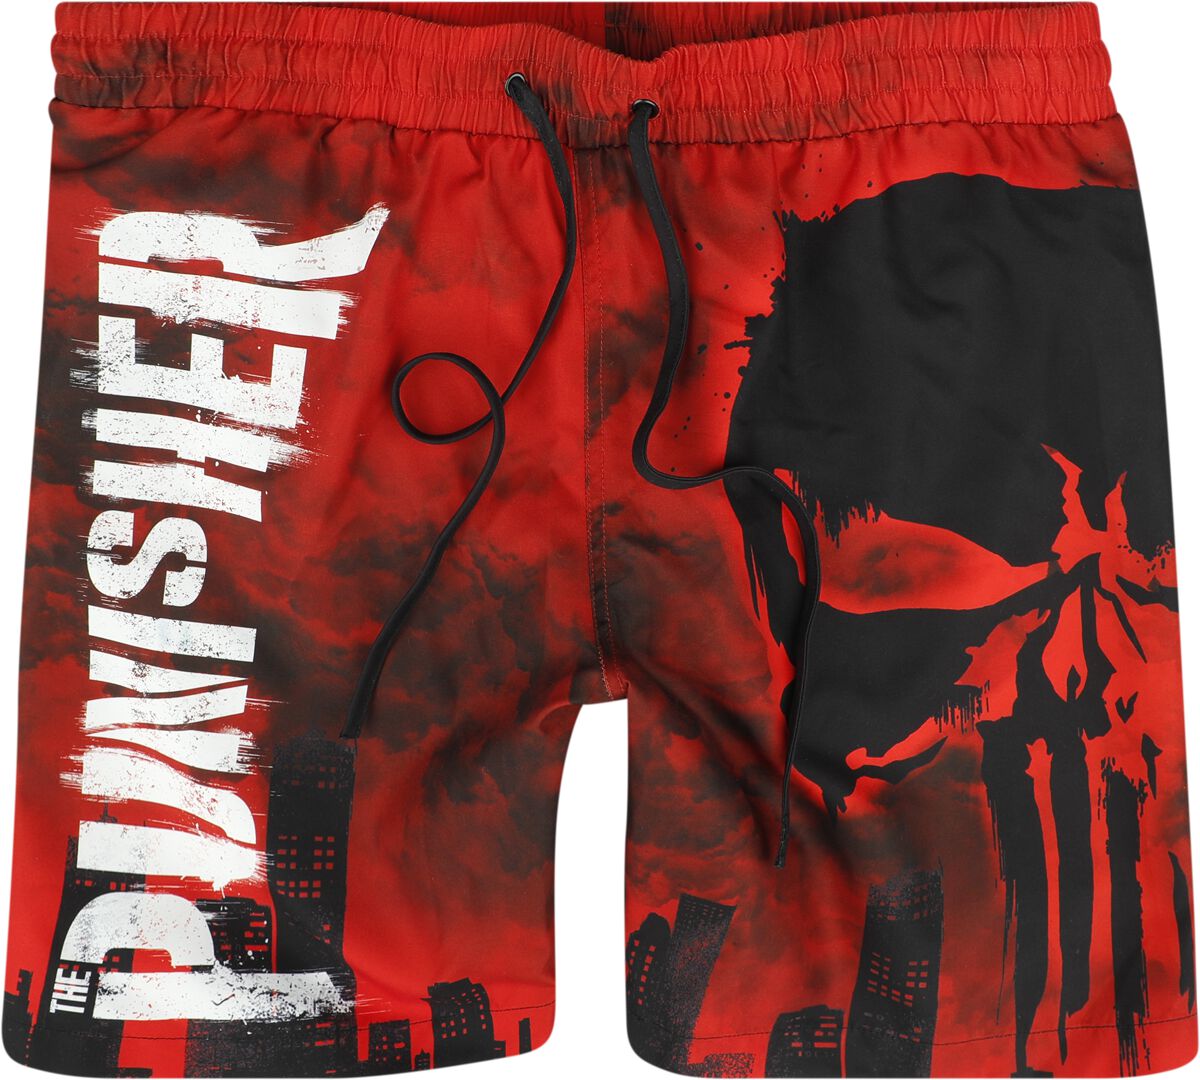 The Punisher - Marvel Badeshort - Skull - Red Desaster - S bis XXL - für Männer - Größe L - multicolor  - EMP exklusives Merchandise!